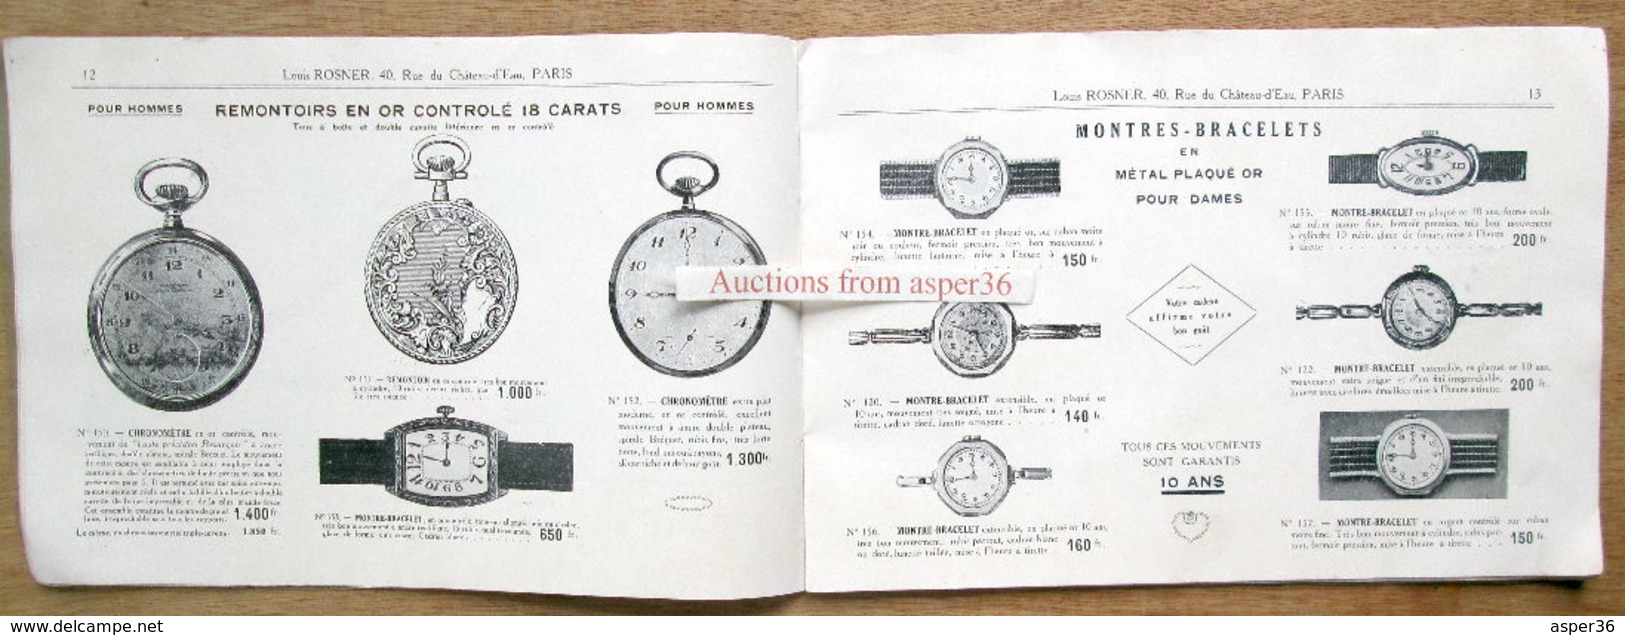 catalogue "Horlogerie de Besançon, Louis Rosner, rue du Château-d'Eau, Paris Xe"